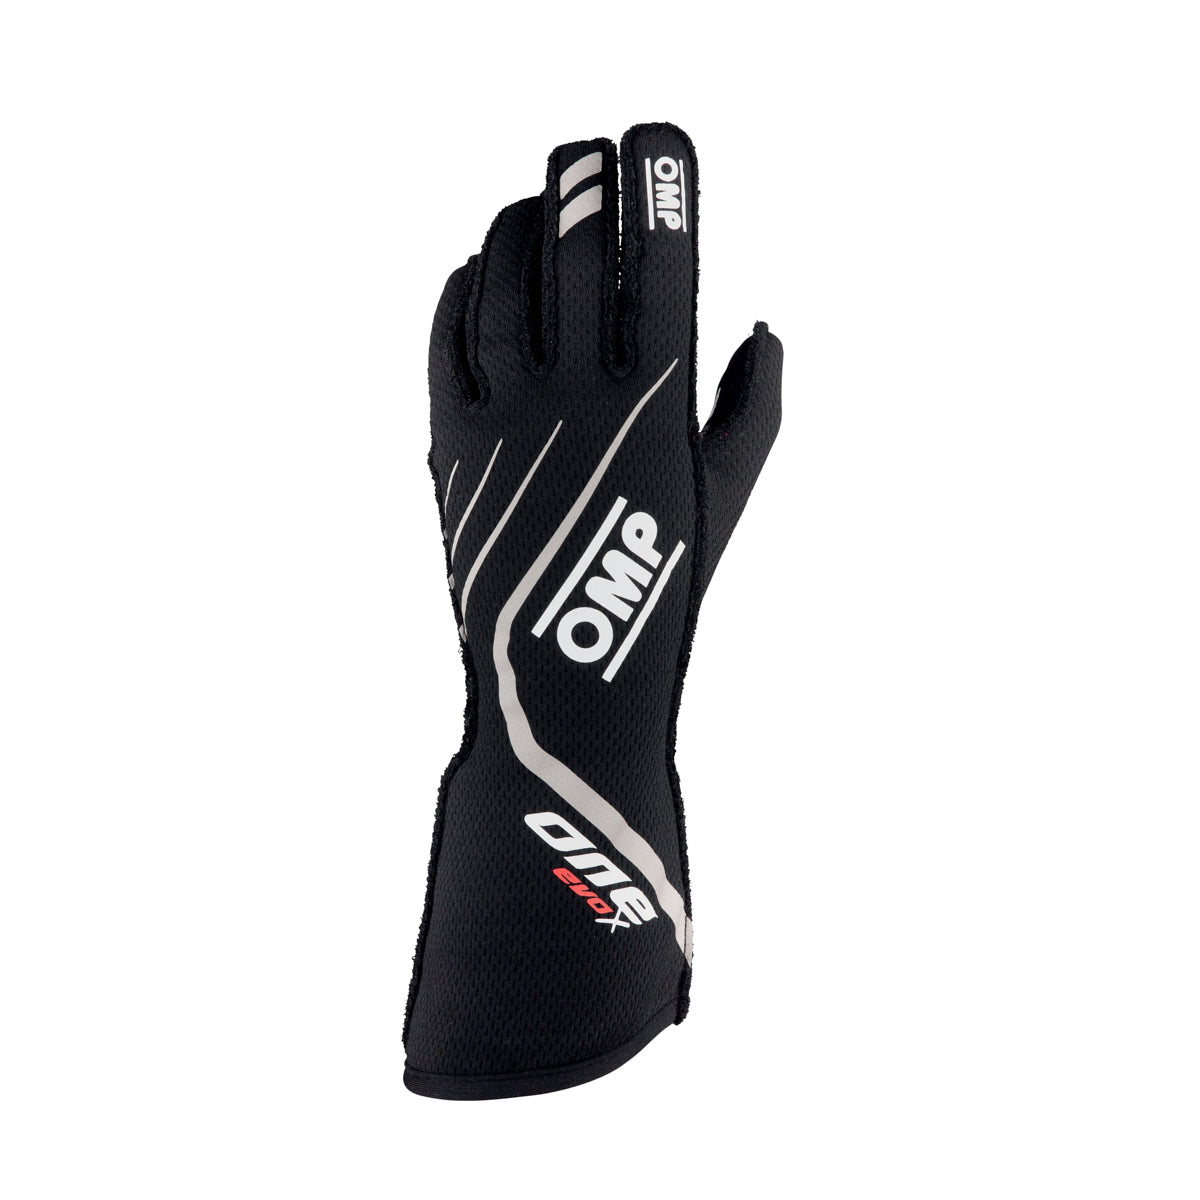 One EVO X Gloves Black Size XS